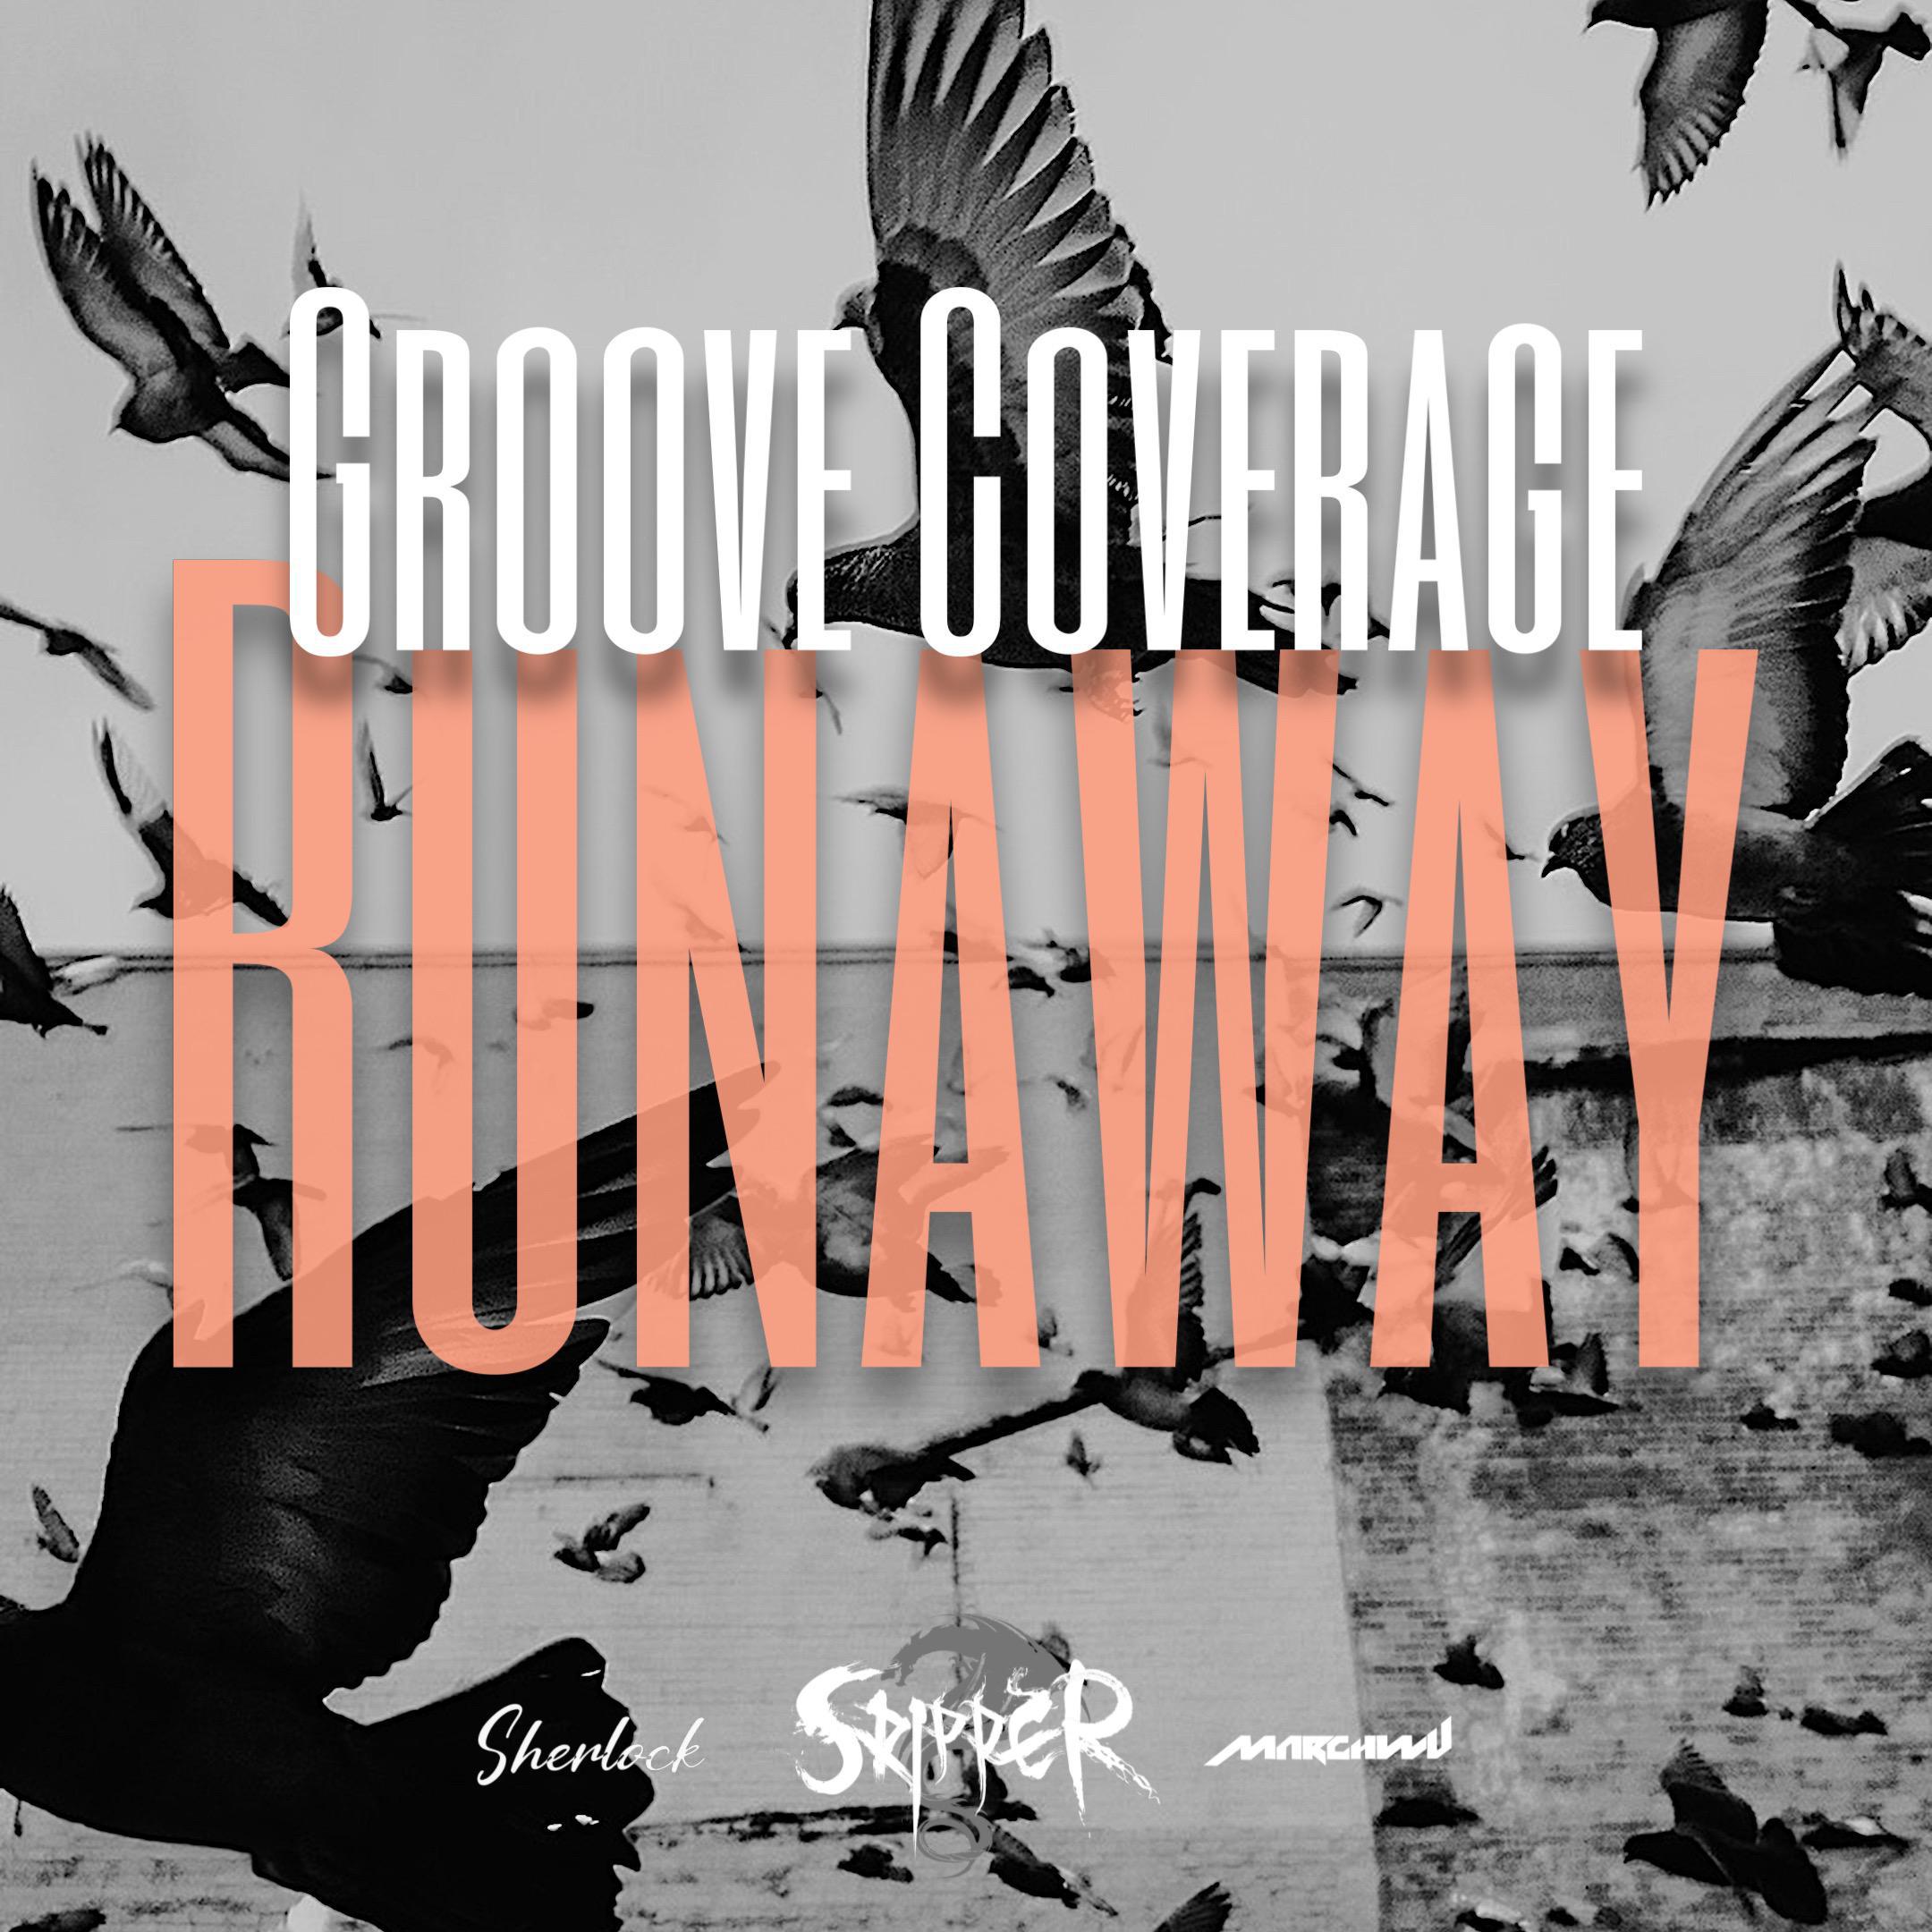 Skipper - Groove Coverage-Runaway（Skipper / MARCHWU / Sherlock remix）